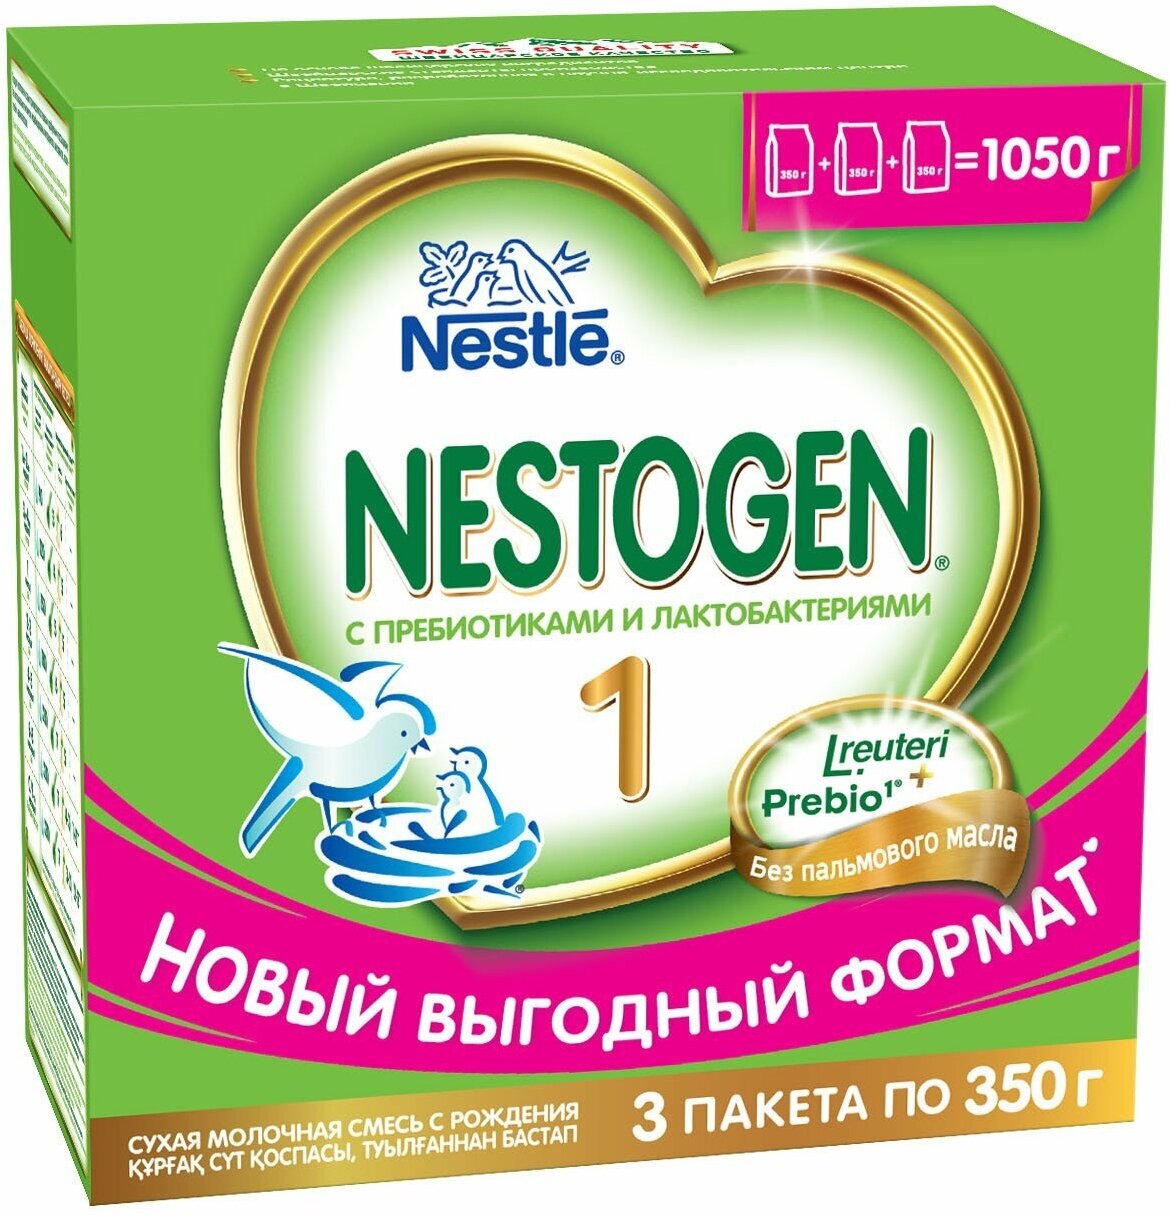 Nestogen® 1 Сухая молочная смесь для регулярного мягкого стула, 300гр - фото №6